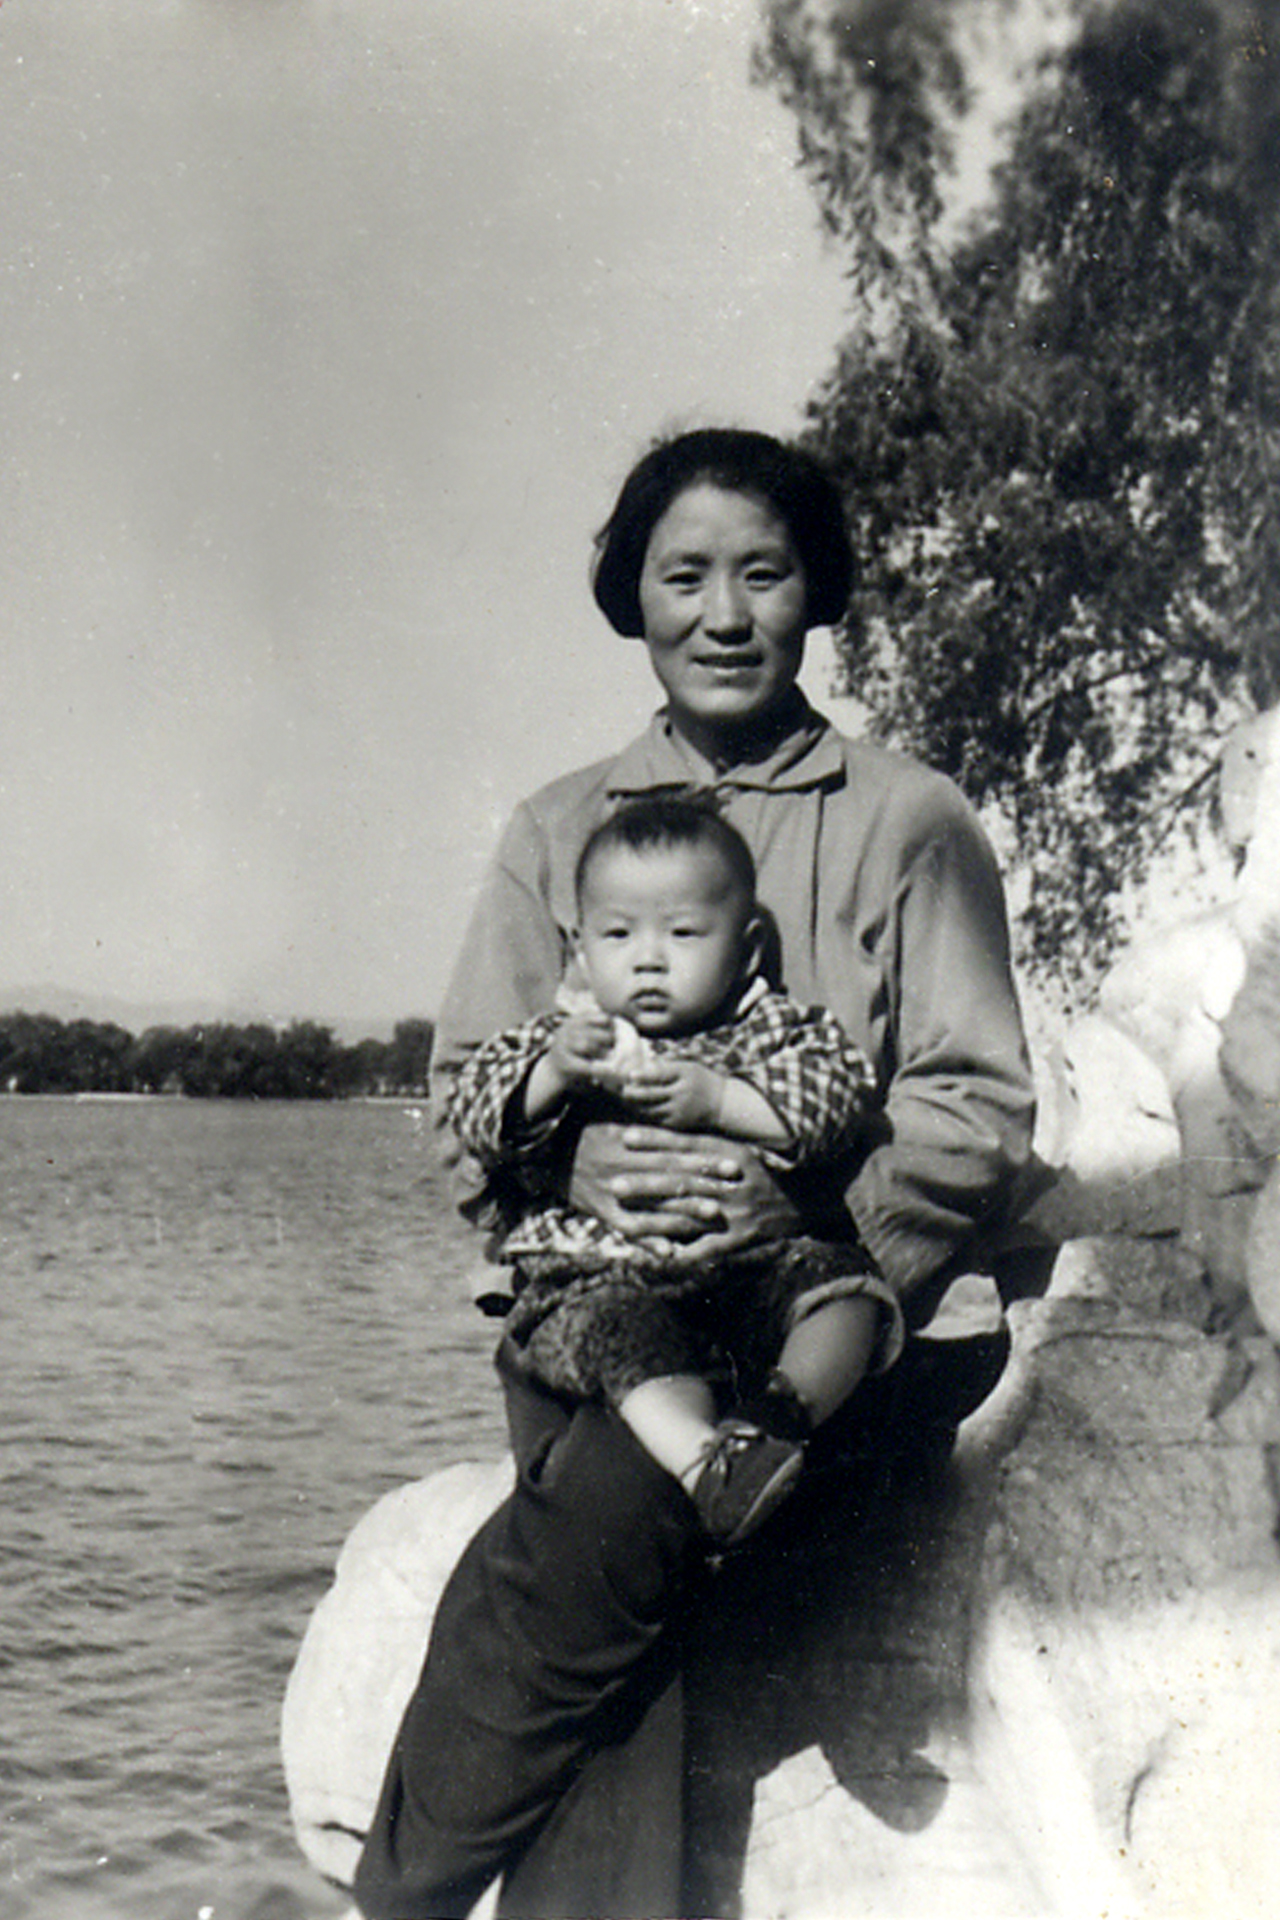 42年前王克凤抱着儿子丁志冈在大明湖畔丁恩昌摄影